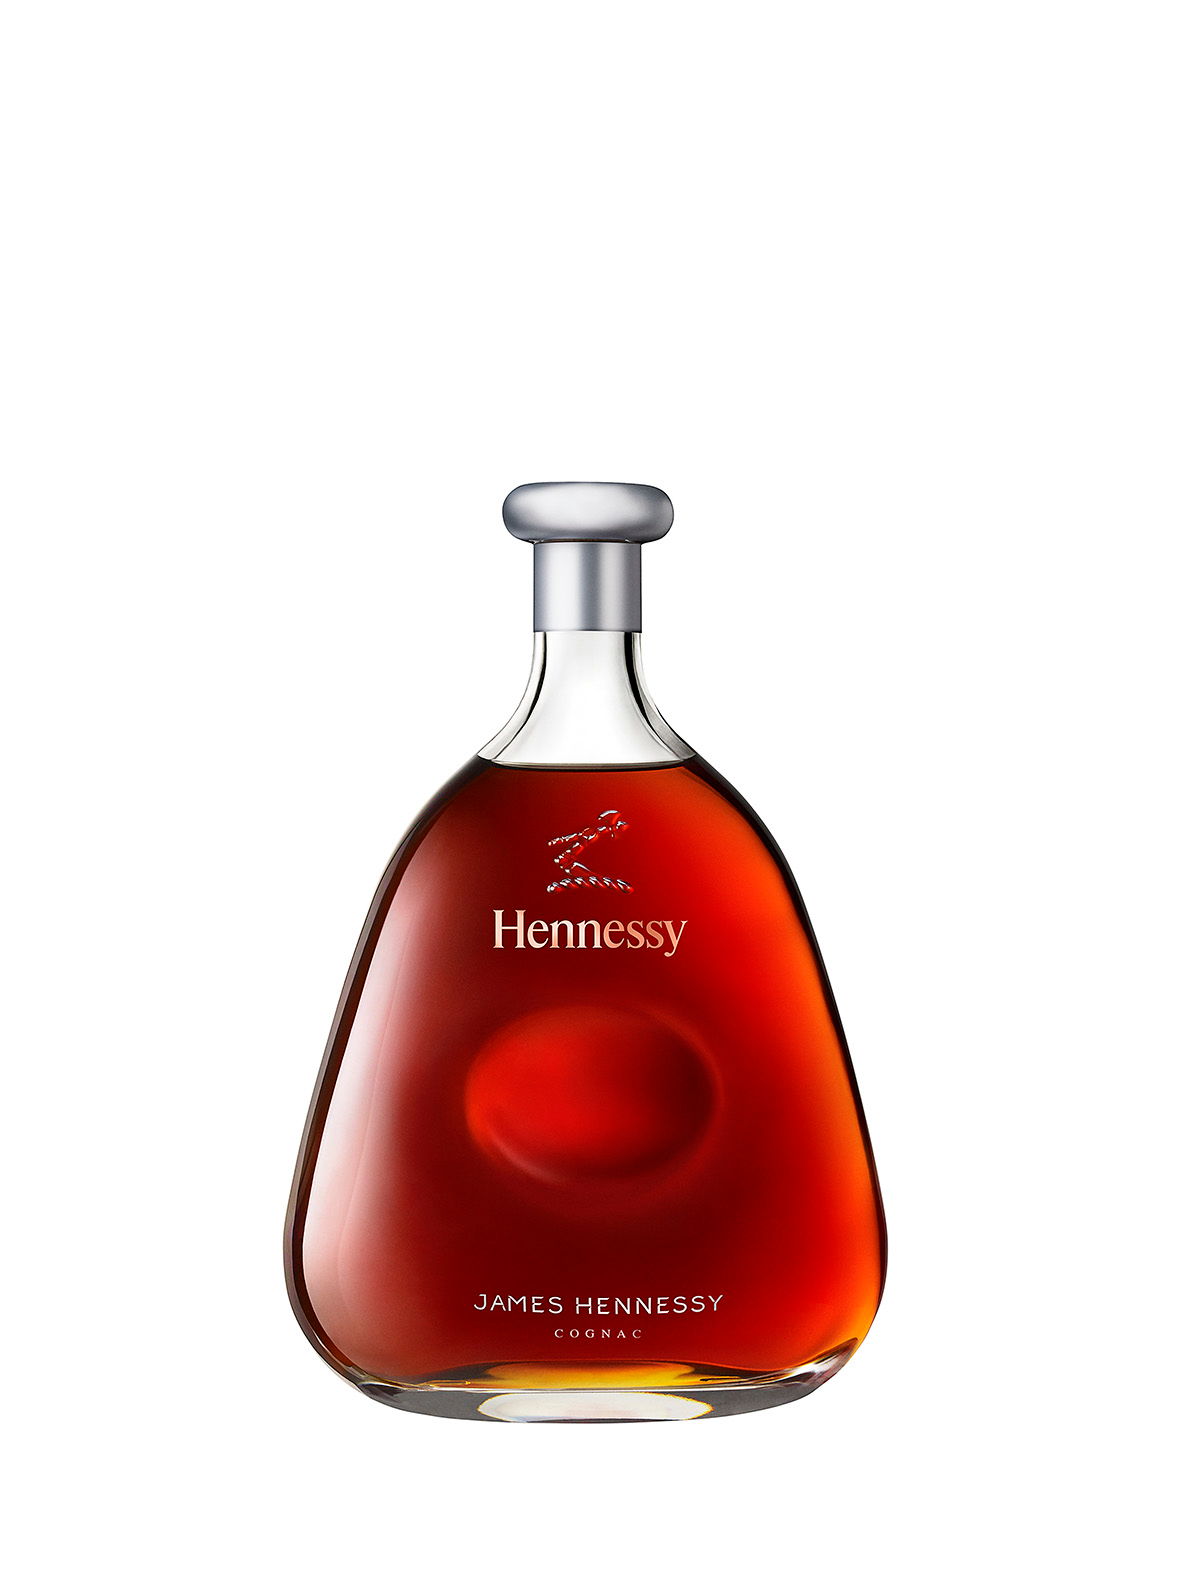 Бутылка созданная Марком к 250летнему юбилею дома Hennessy с новым блендом названным в честь старшего сына основателя...